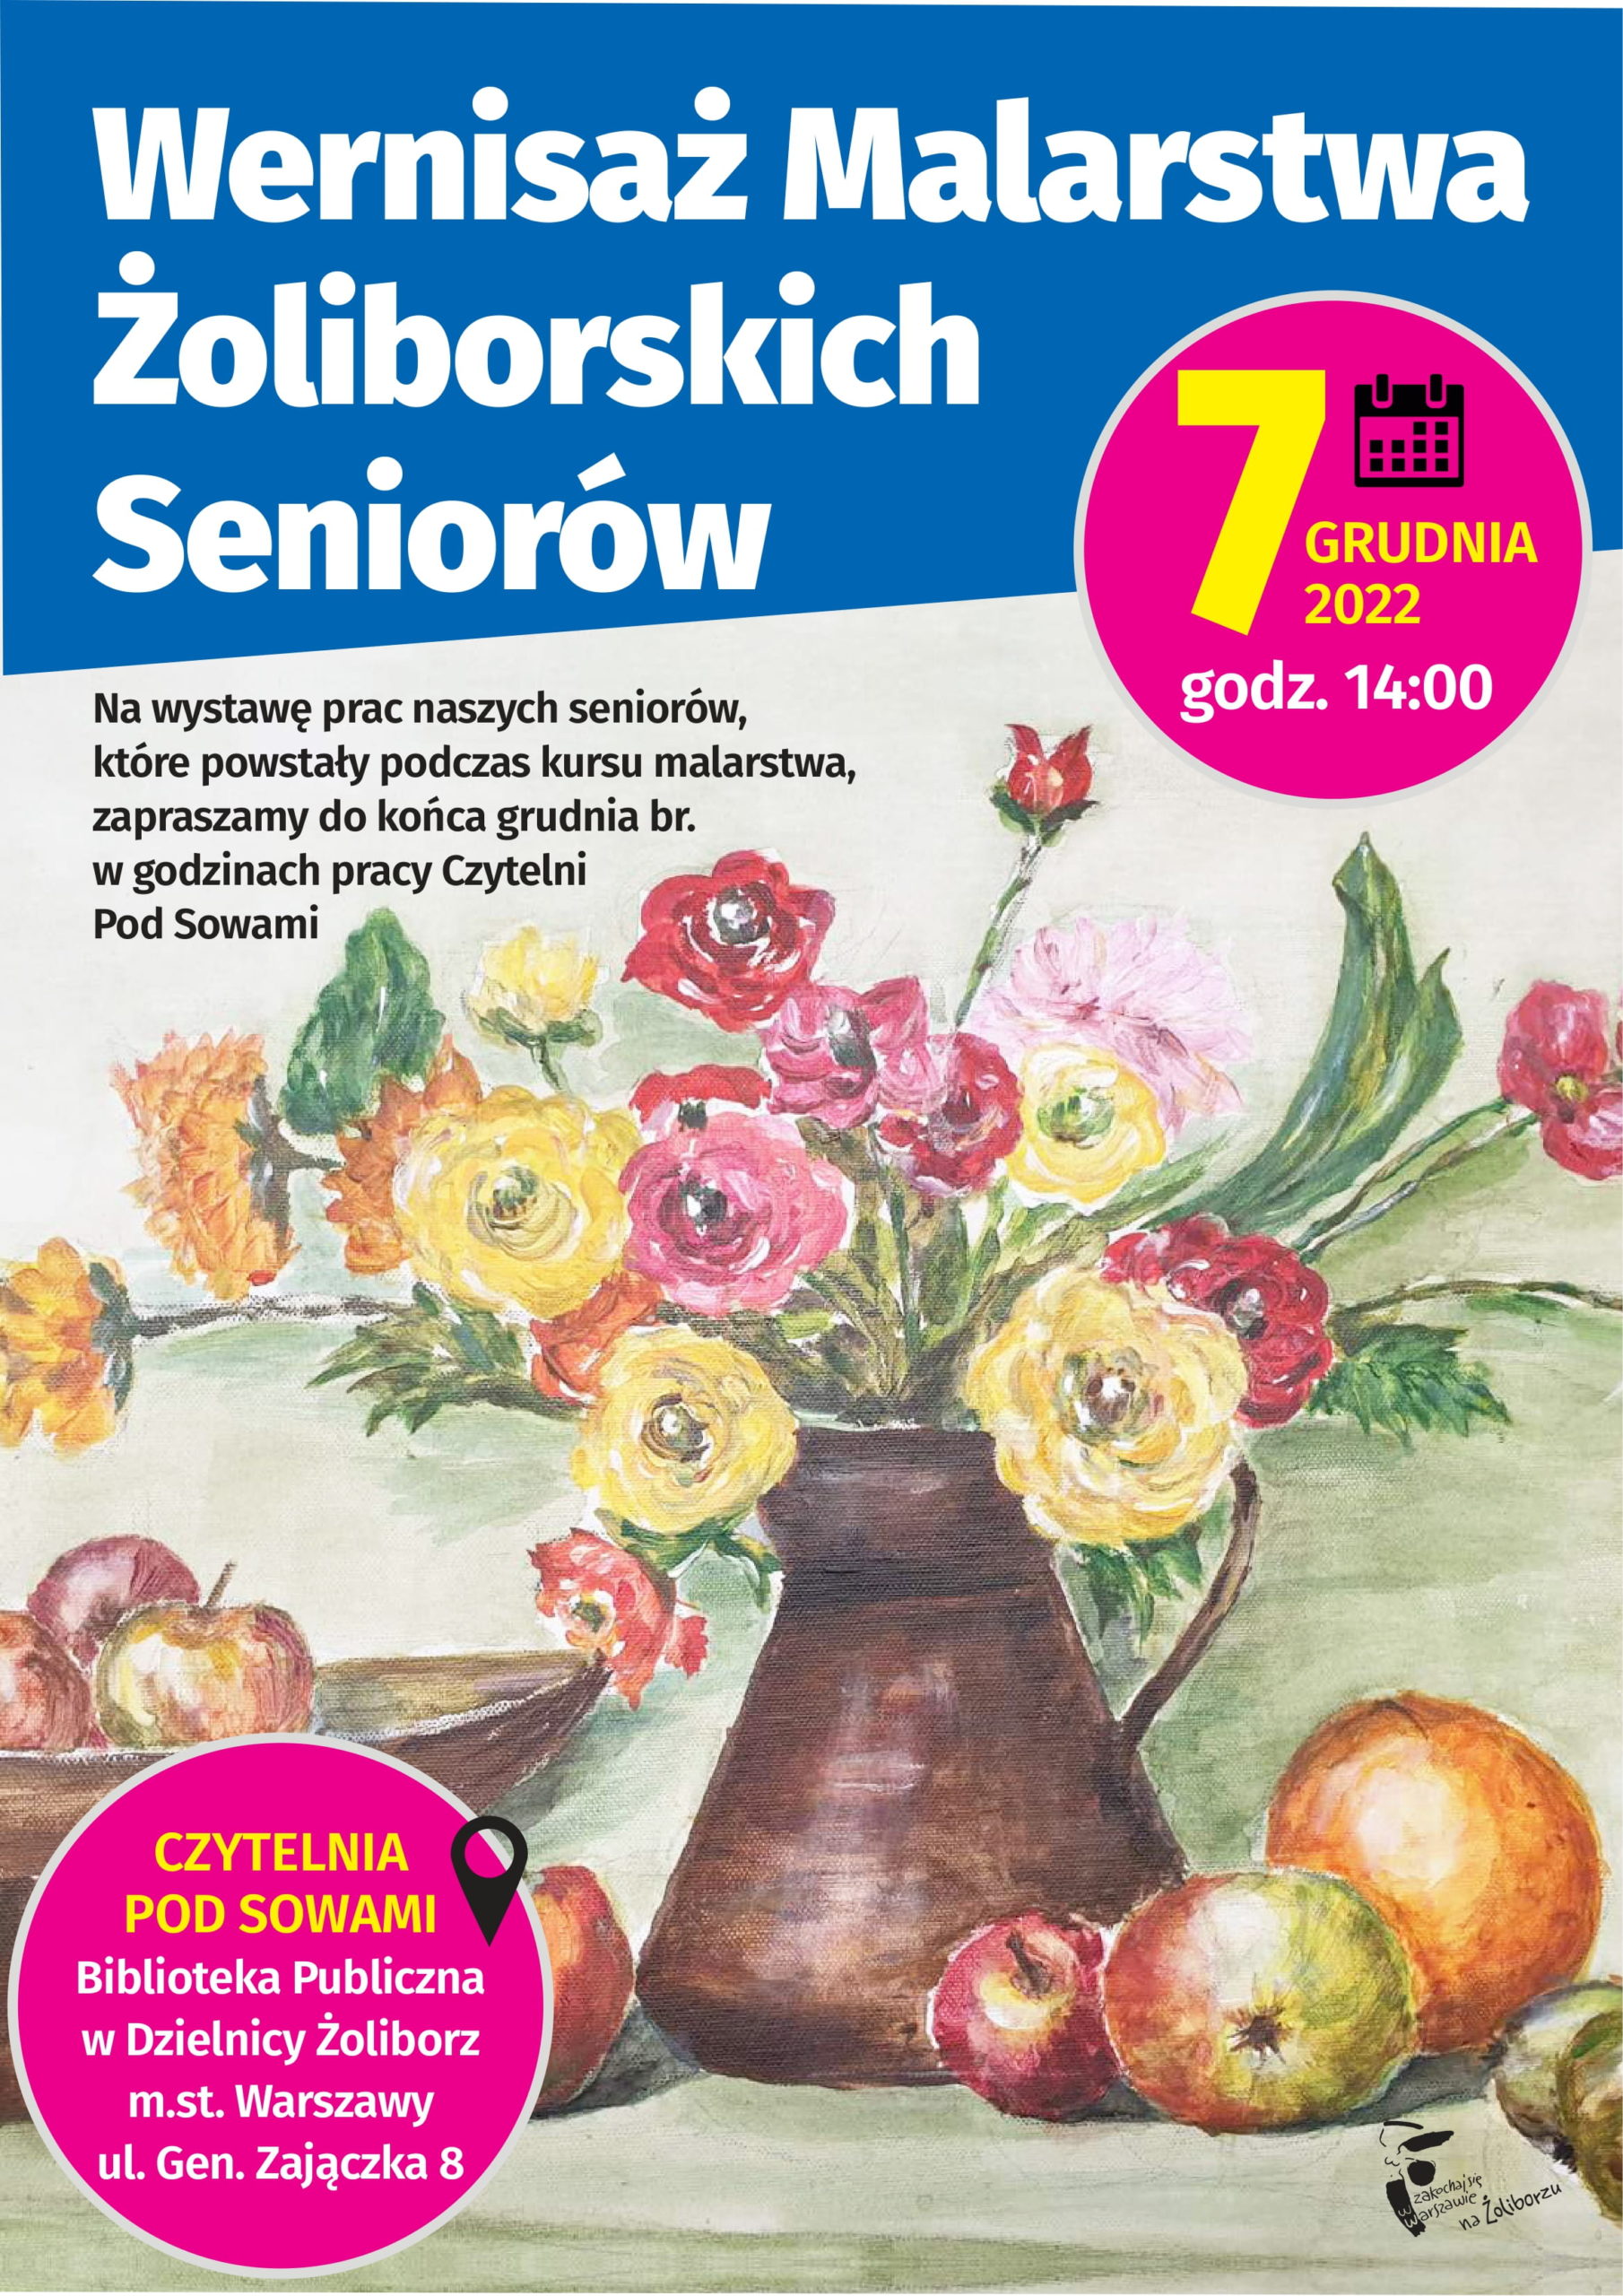 Plakat informujący o wernisażu prac malarskich żoliborskich seniorów. Na plakacie grafika przedstawiająca wazon z kwiatami oraz owoce.